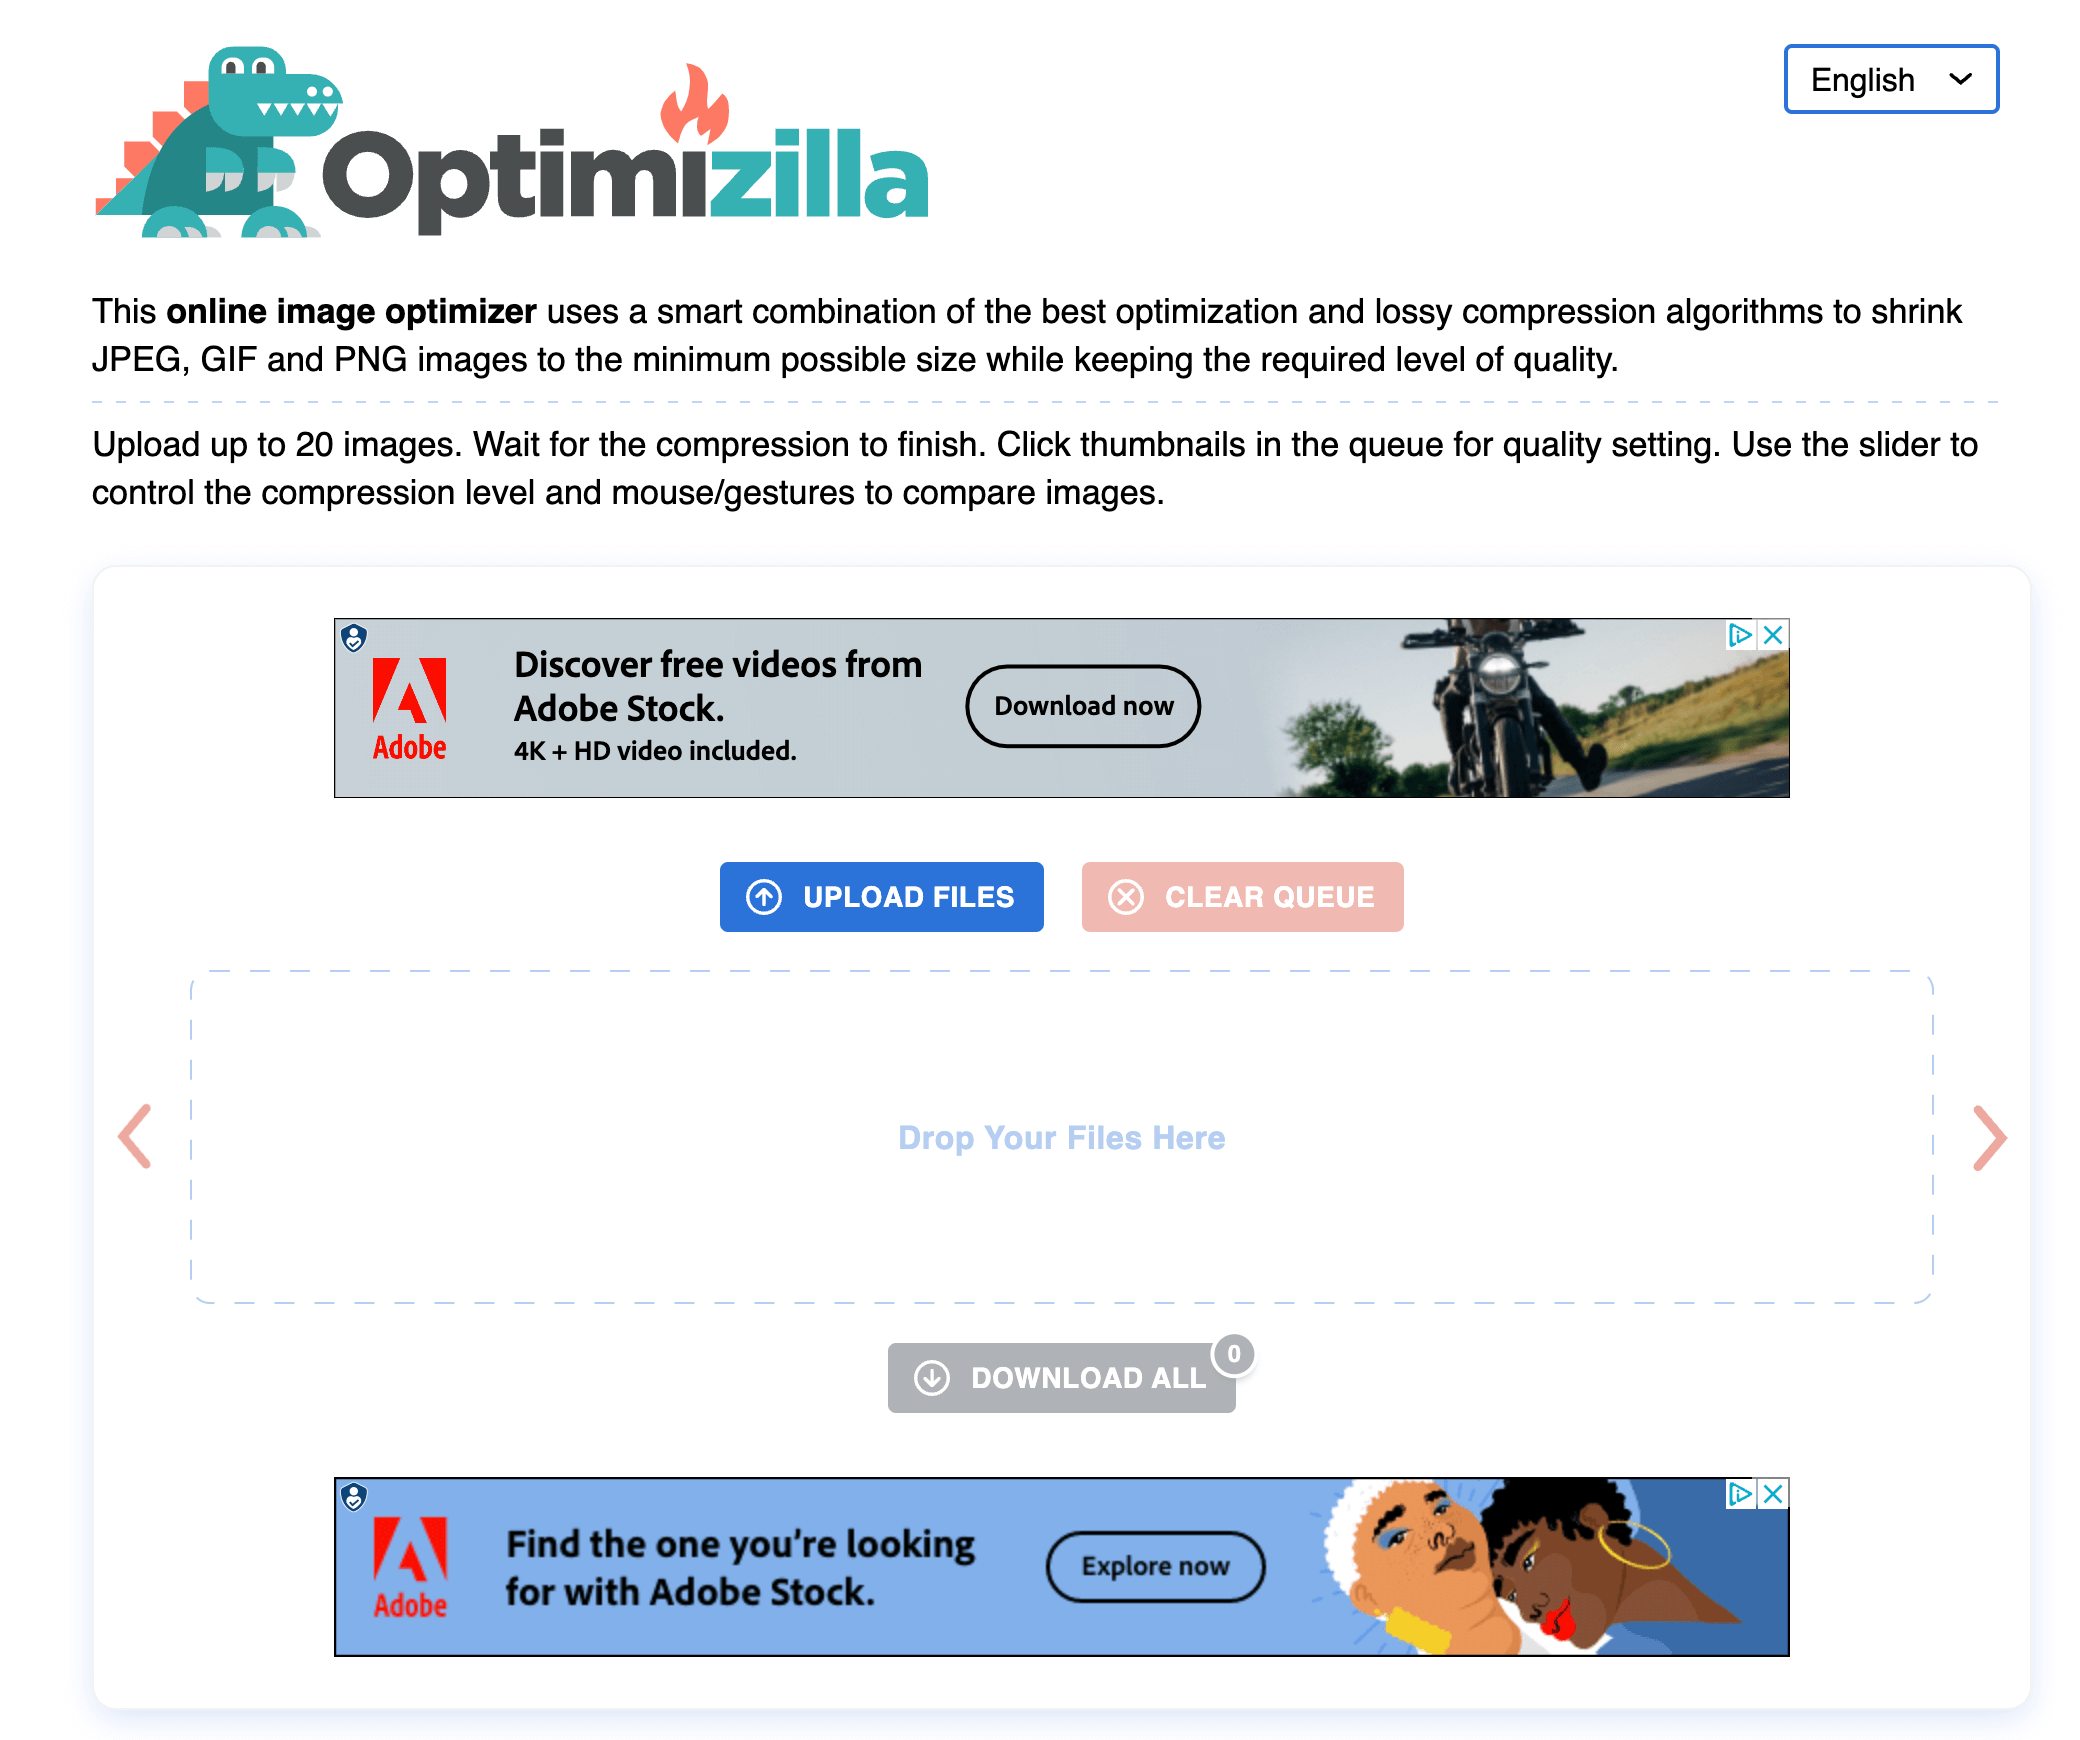 Optimizilla's home page